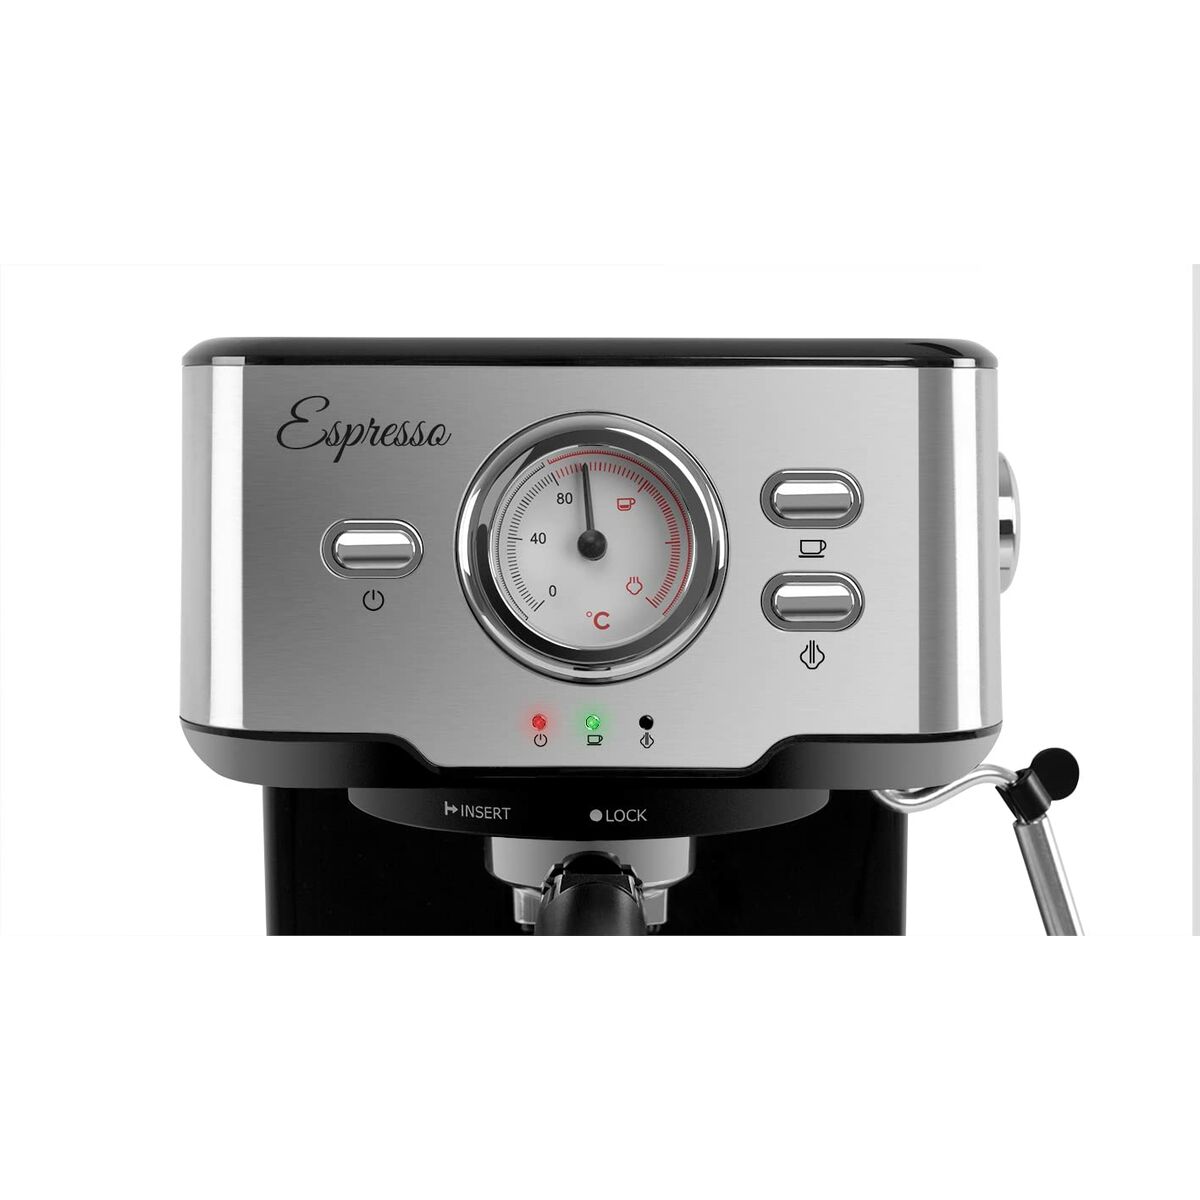 Superautomatische Kaffeemaschine Orbegozo EX 5500 Bunt 1,5 L - CA International 